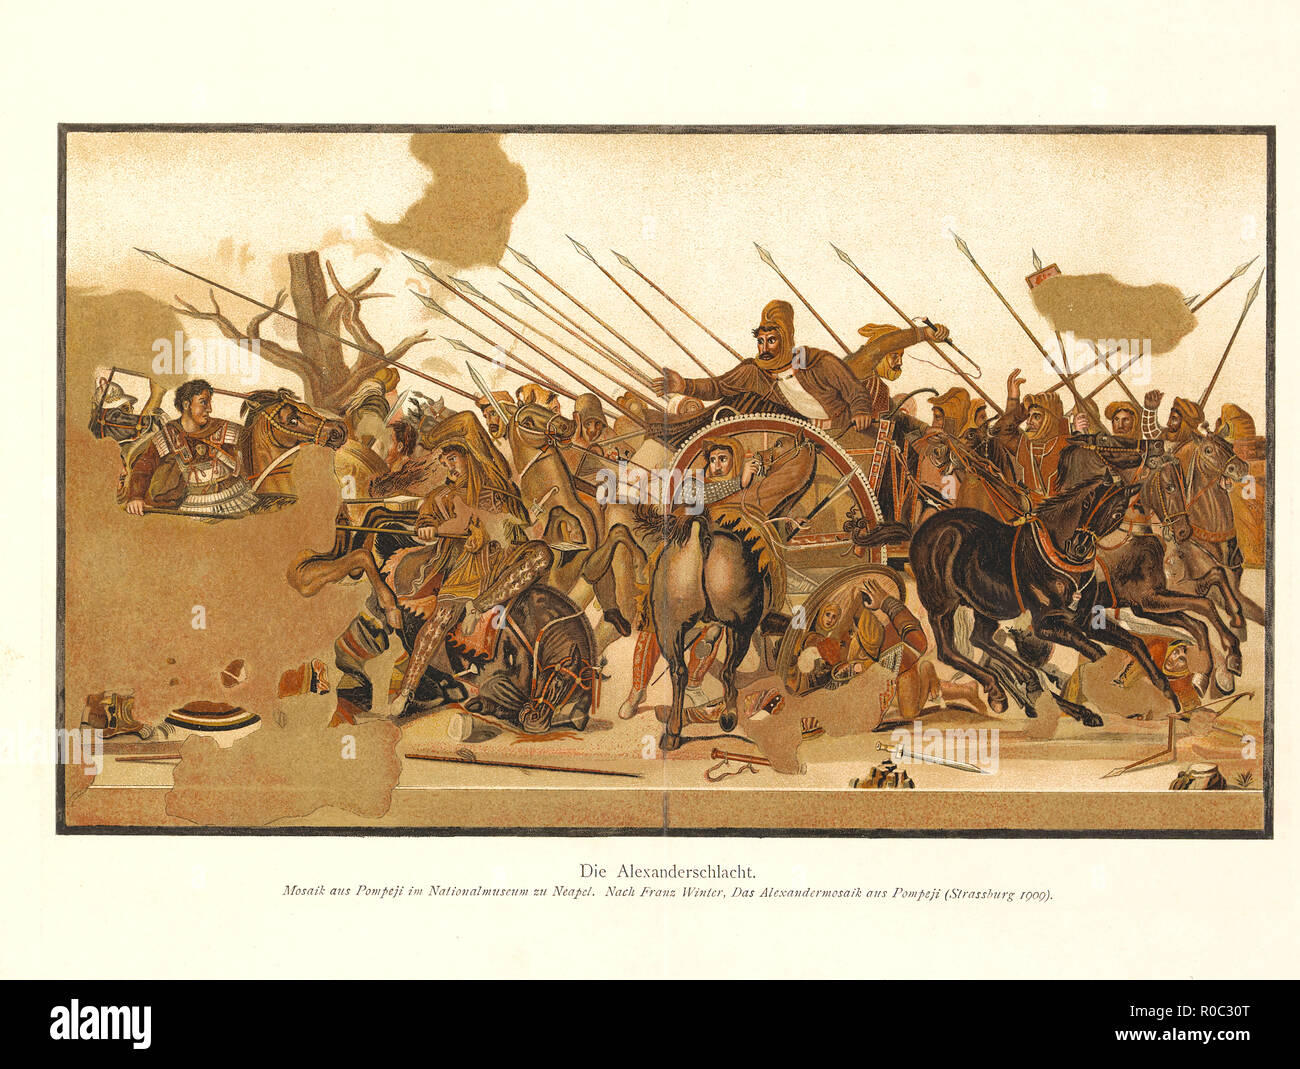 Alexander der Große im Vergleich zu Darius III in Persien während der Schlacht von Issus, Fliesen Mosaik entdeckt von den Ruinen von Pompeji, National Museum von Neapel, Straßburg, 1909 Stockfoto